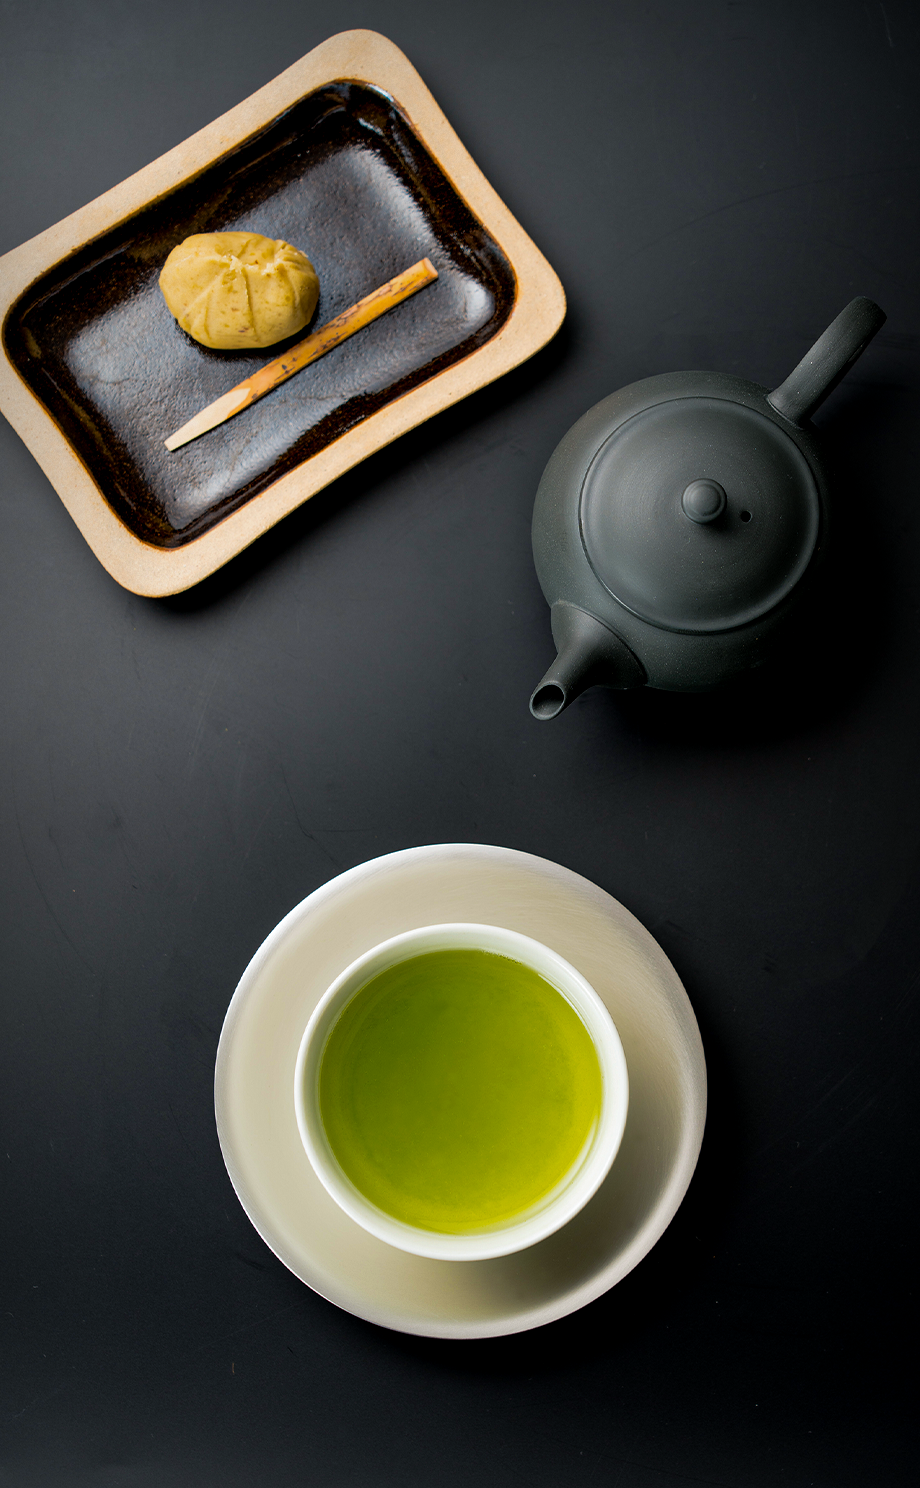 歴史と伝統が香る自慢の高級煎茶